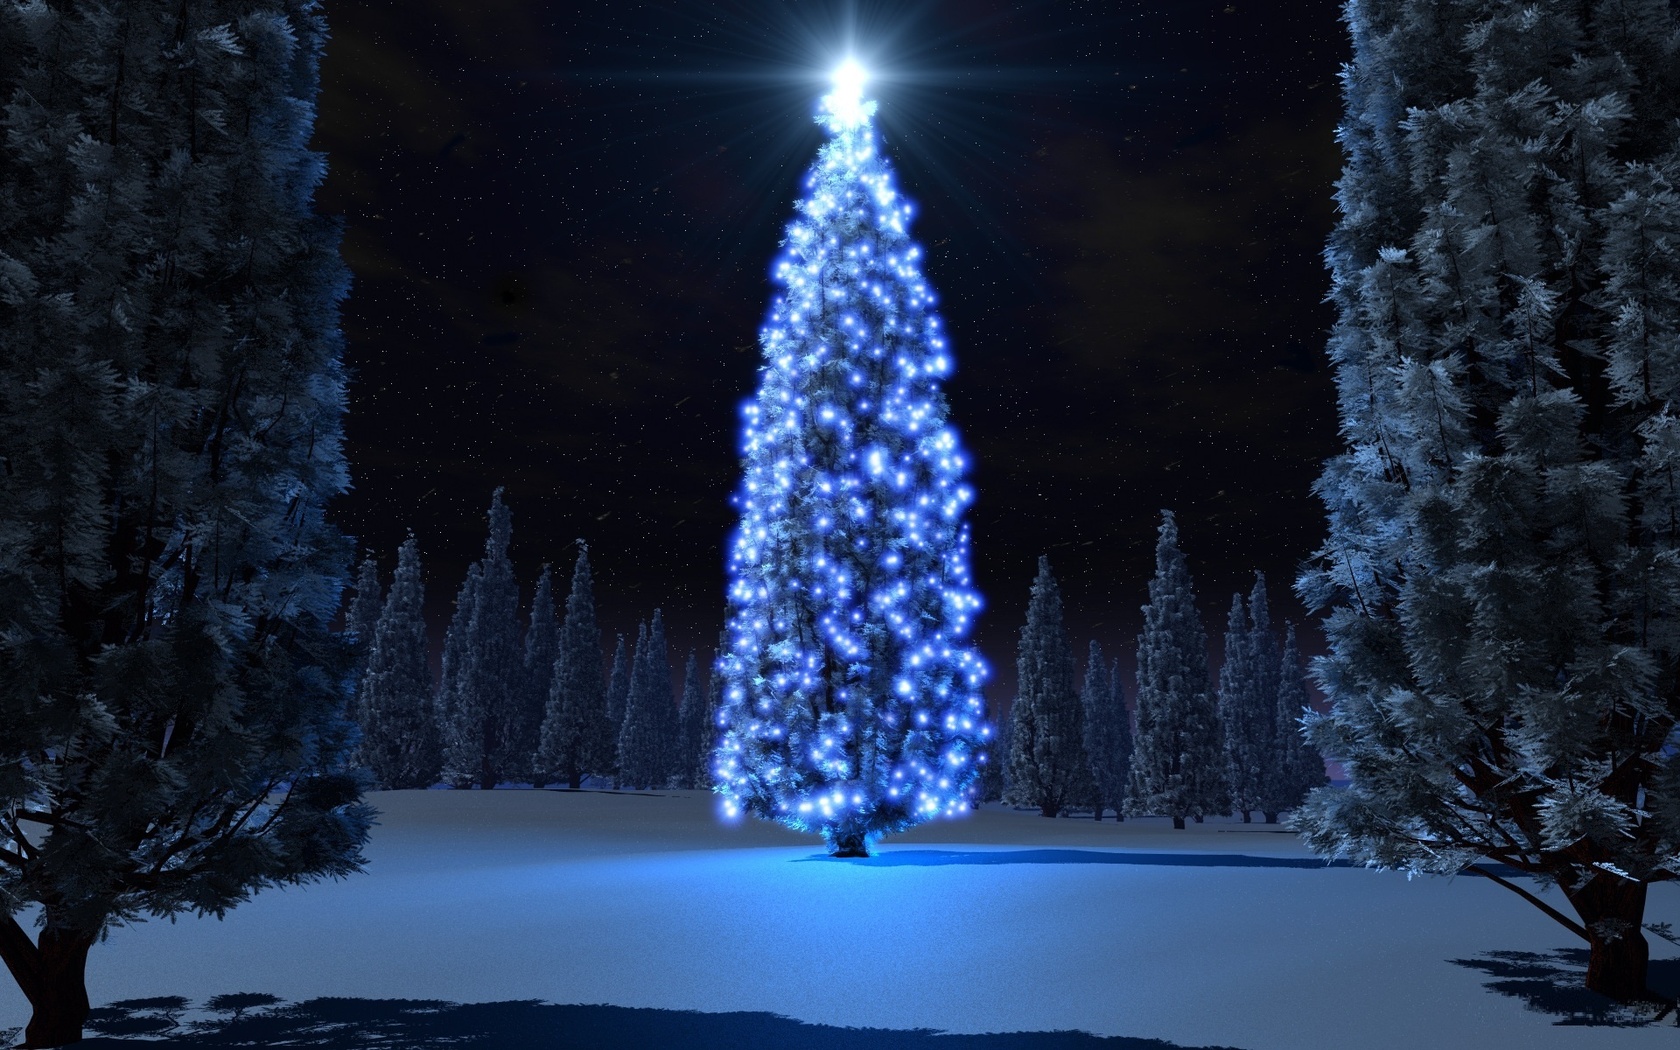 tree, christmas, light, night, snow